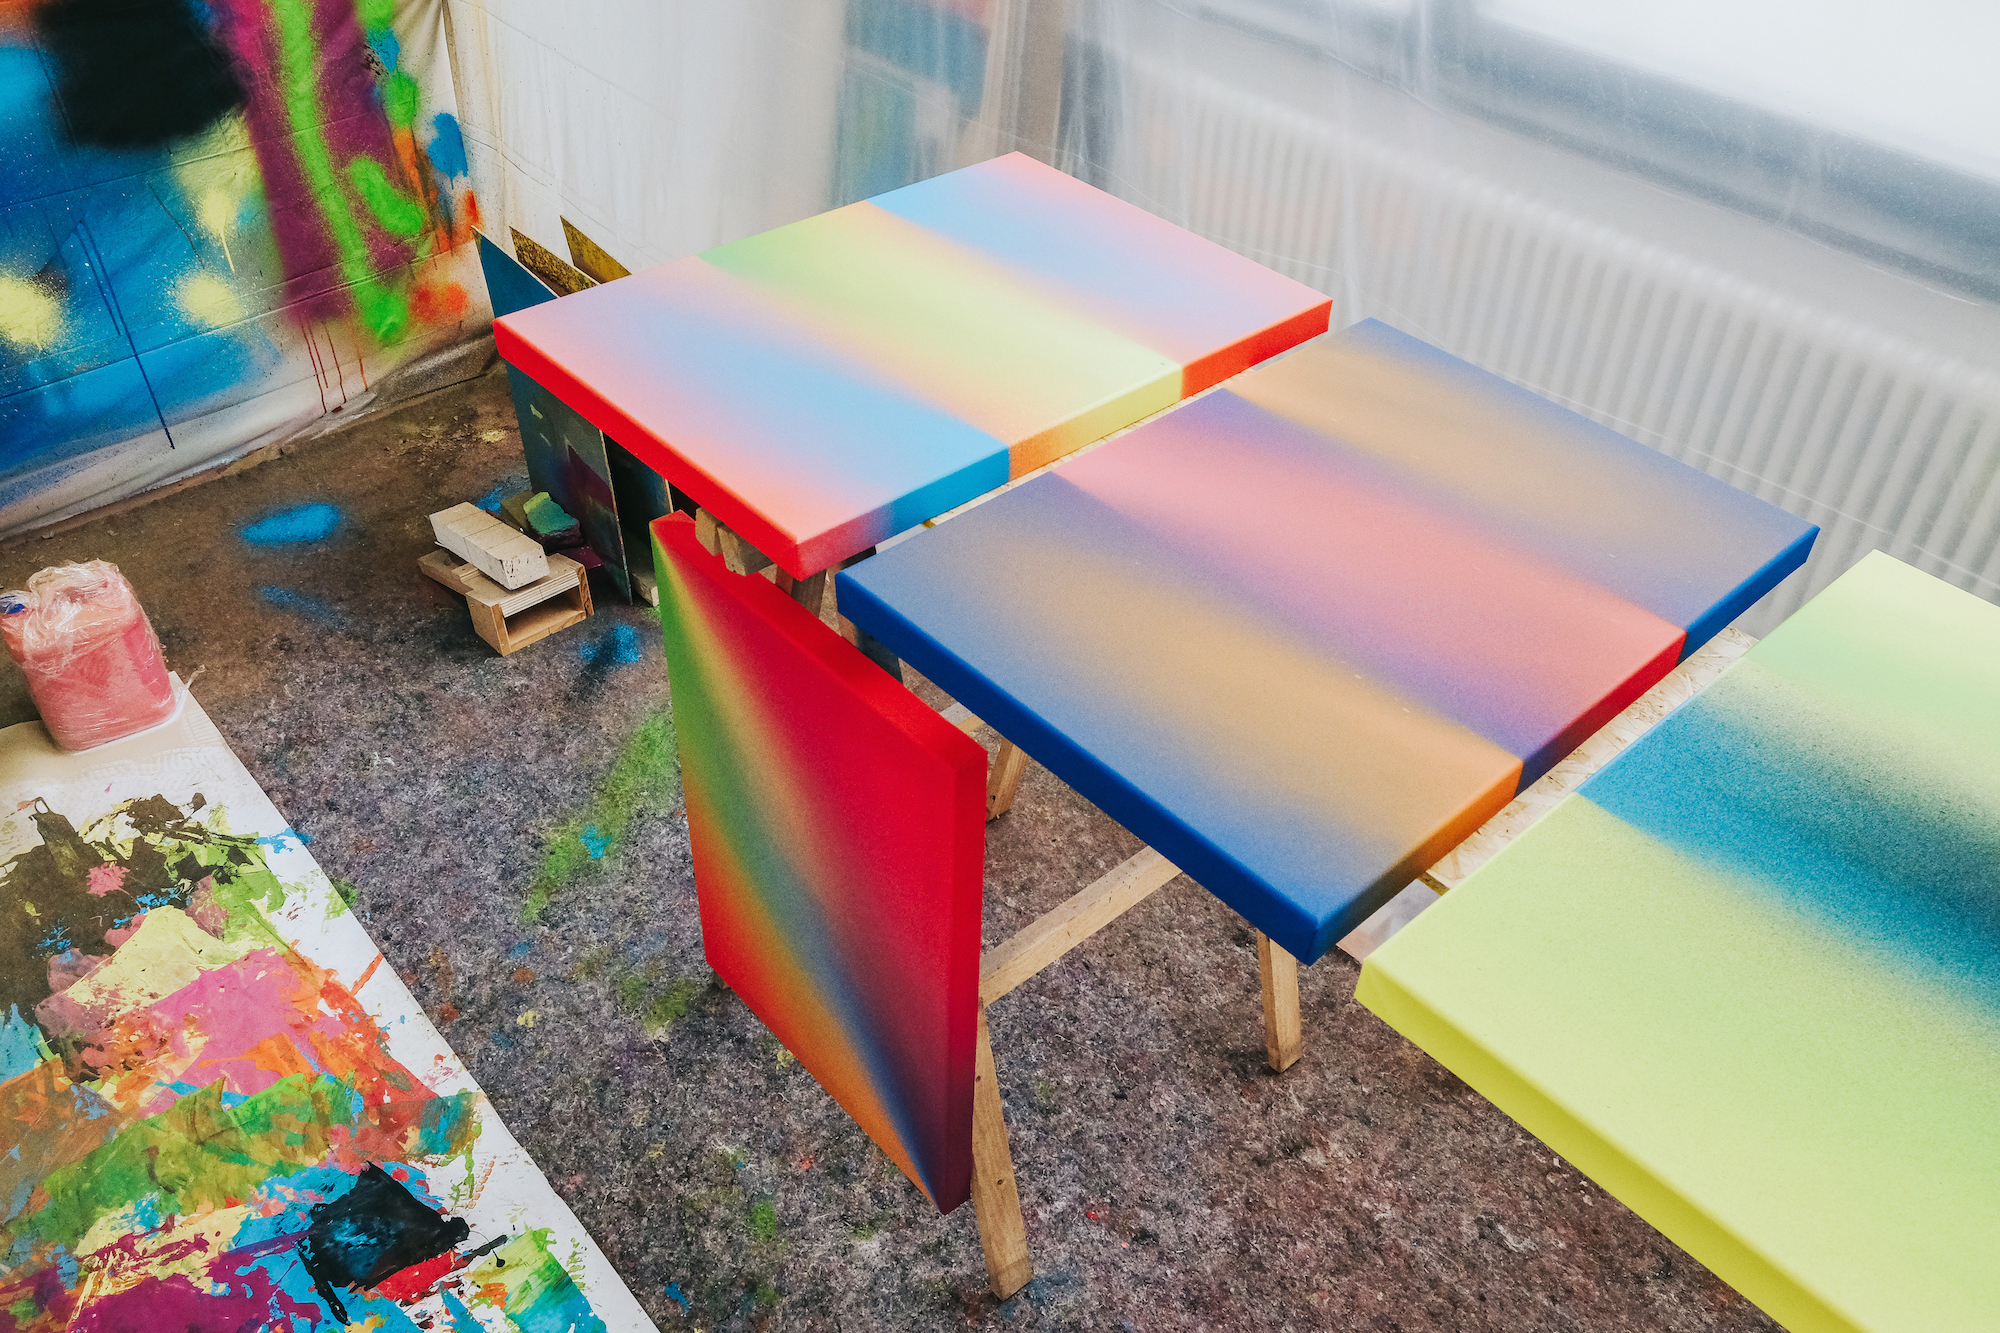 ▷ Color Rain lV by Rutger de Vries, 2019, Painting